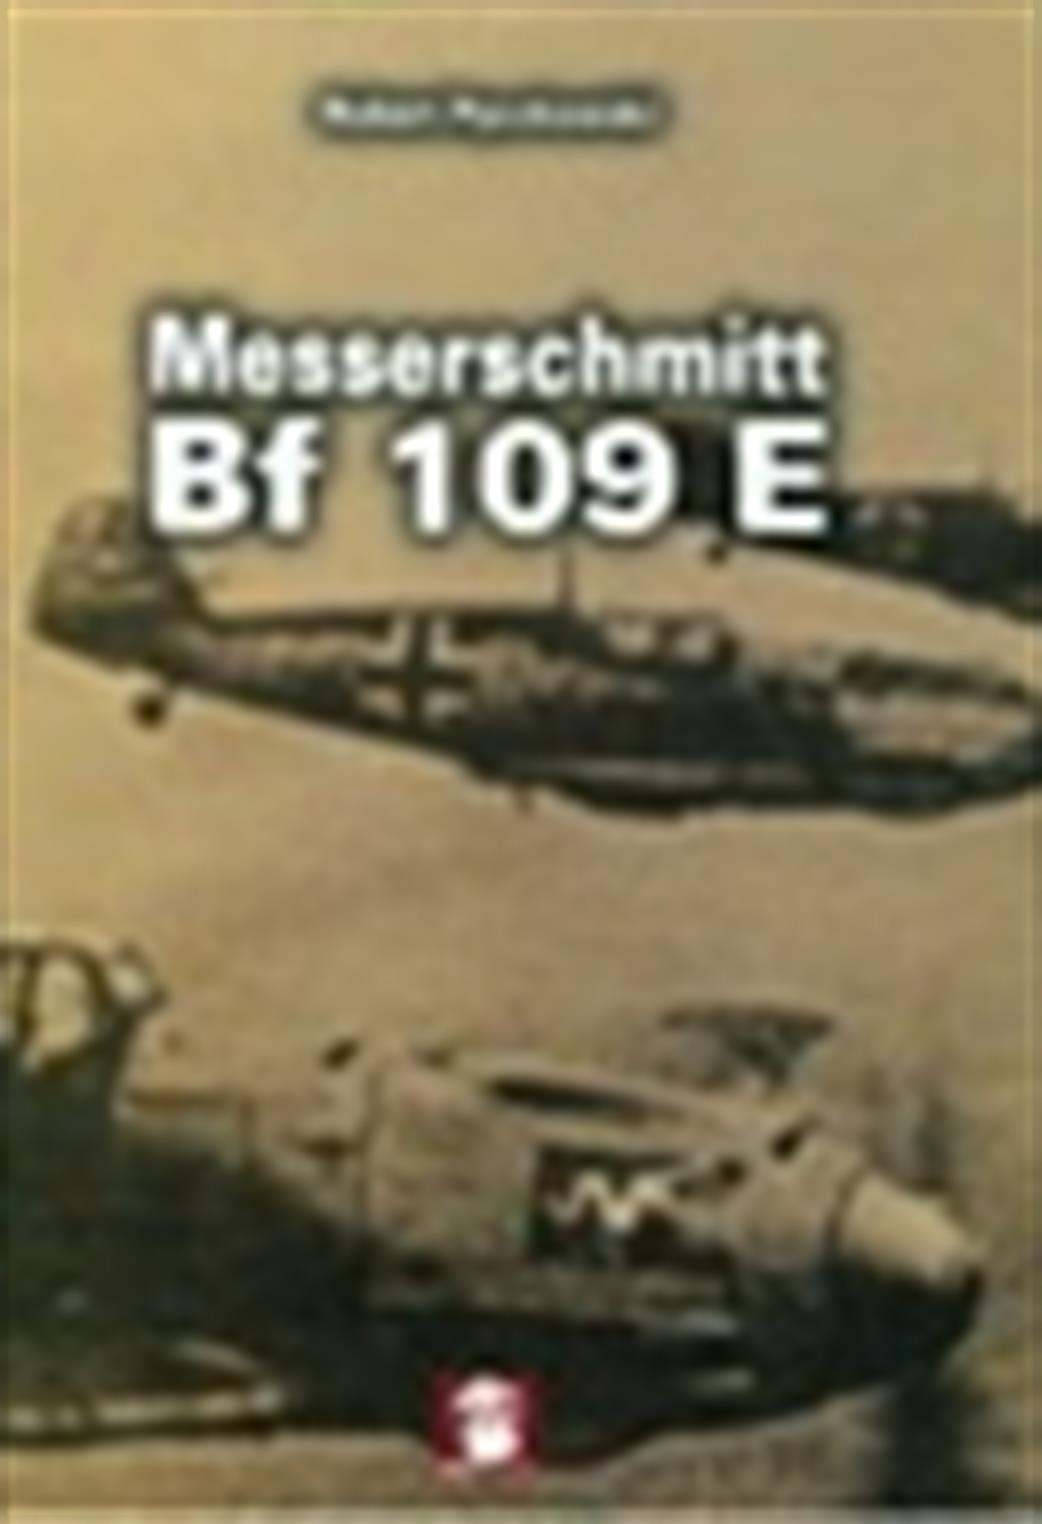 9788365281302 Messerschmitt Bf109E by Robert Peczkowski.